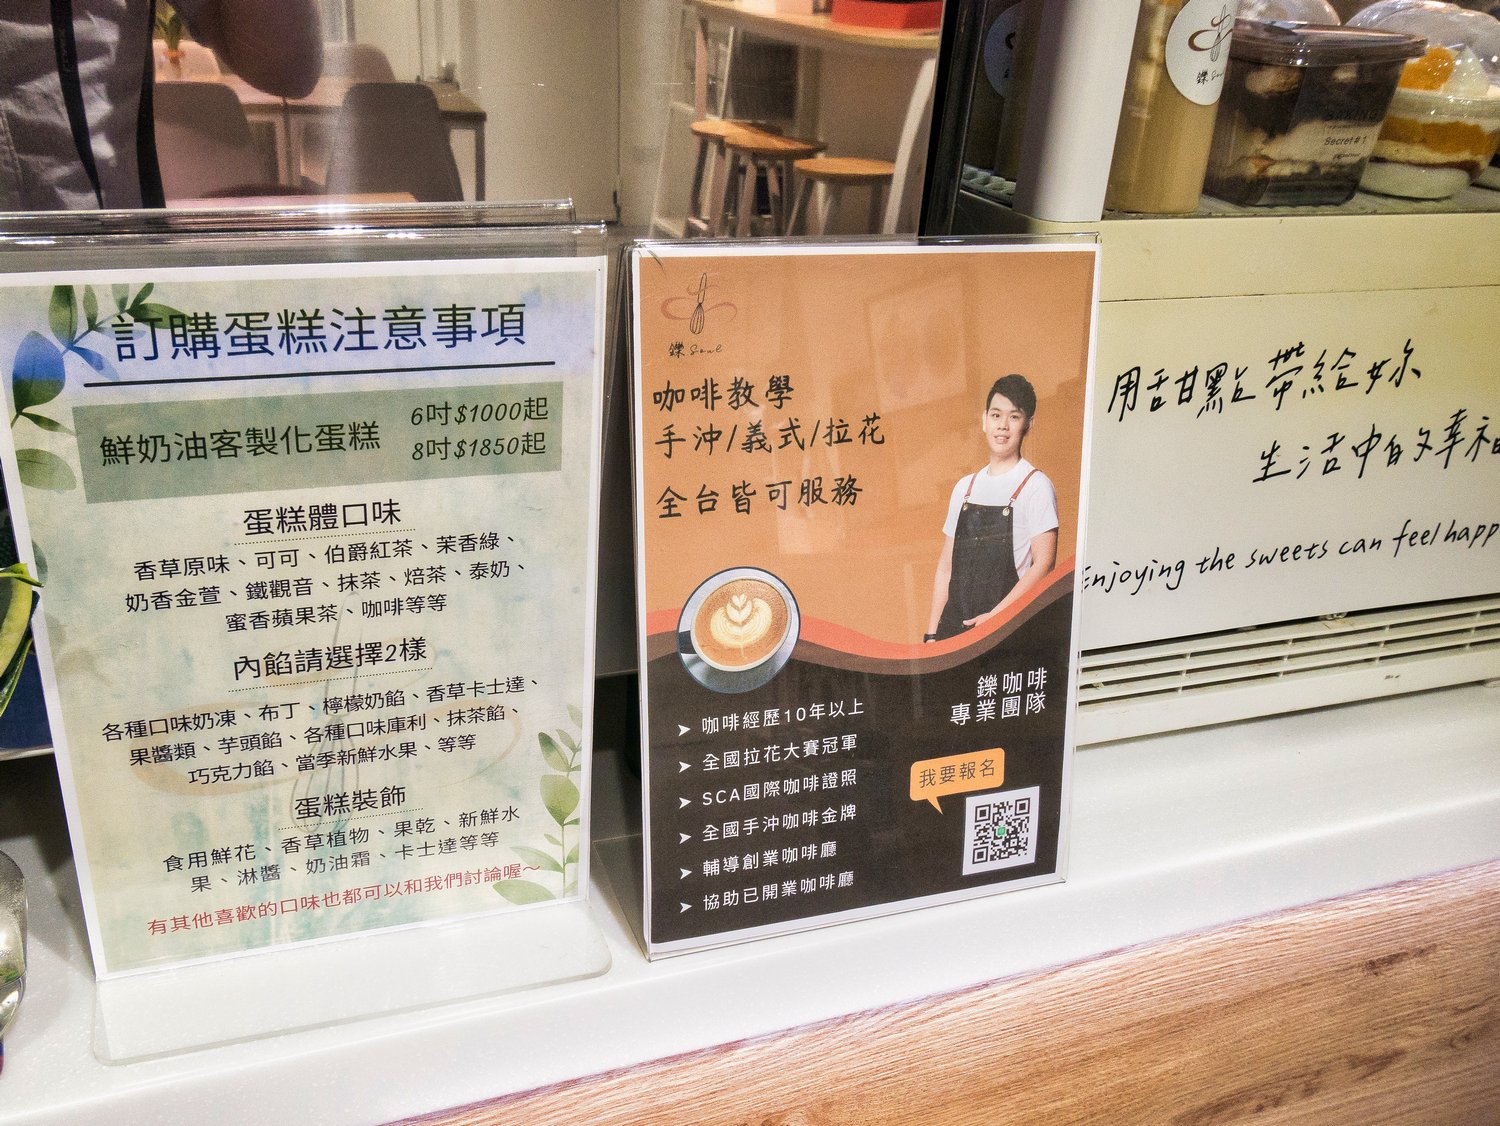 松山區咖啡廳 鑠咖啡甜點專賣店 小巨蛋附近可以體驗精品咖啡